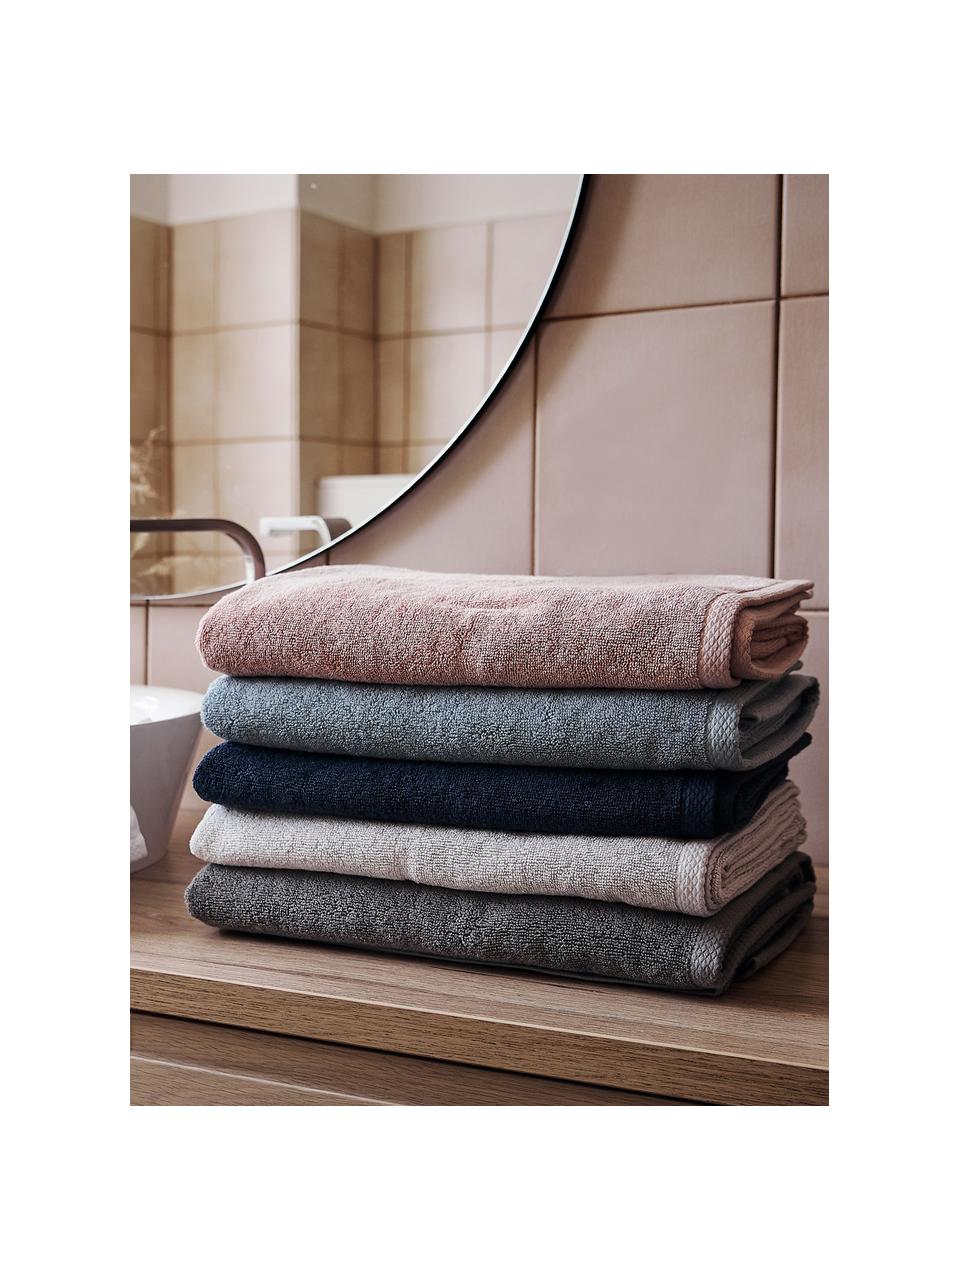 Ręcznik Comfort, różne rozmiary, Biały, Ręcznik kąpielowy XL, S 100 x D 150 cm